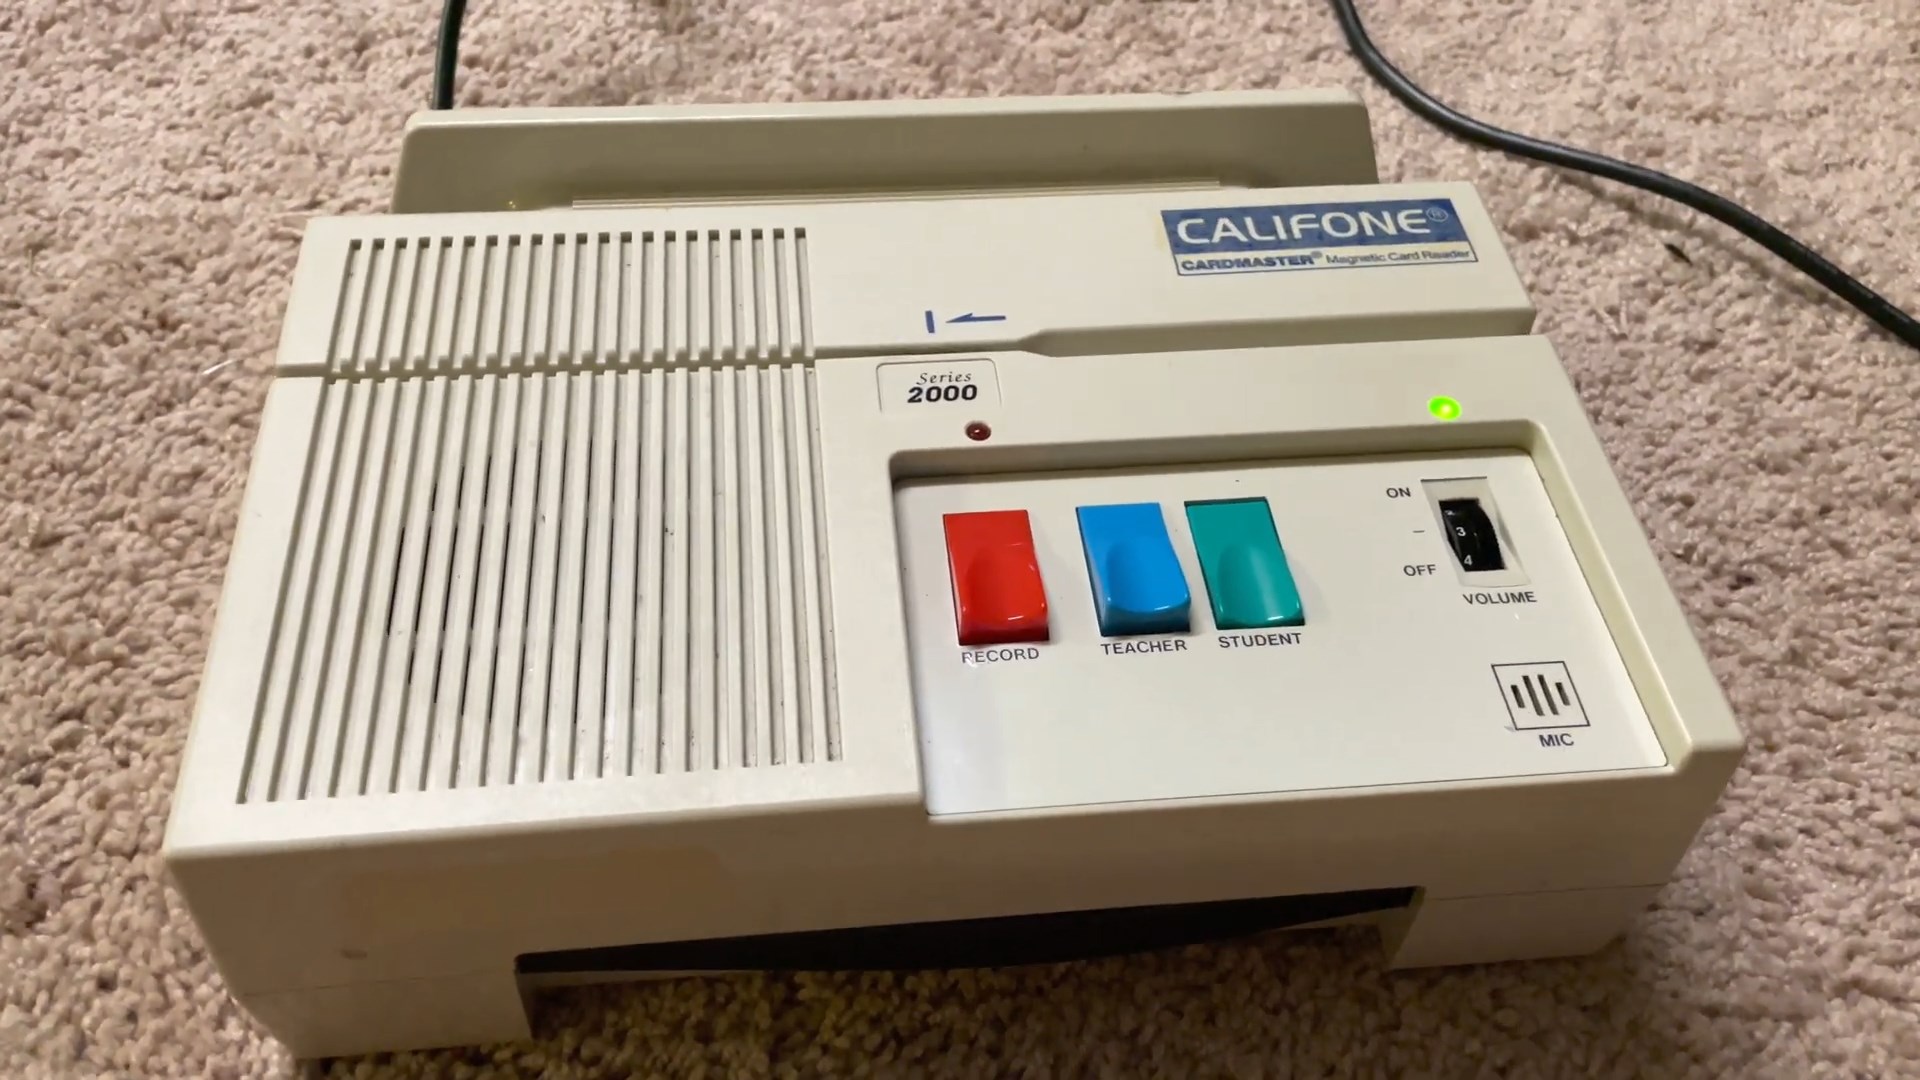 Califone Cardmaster Series 2000